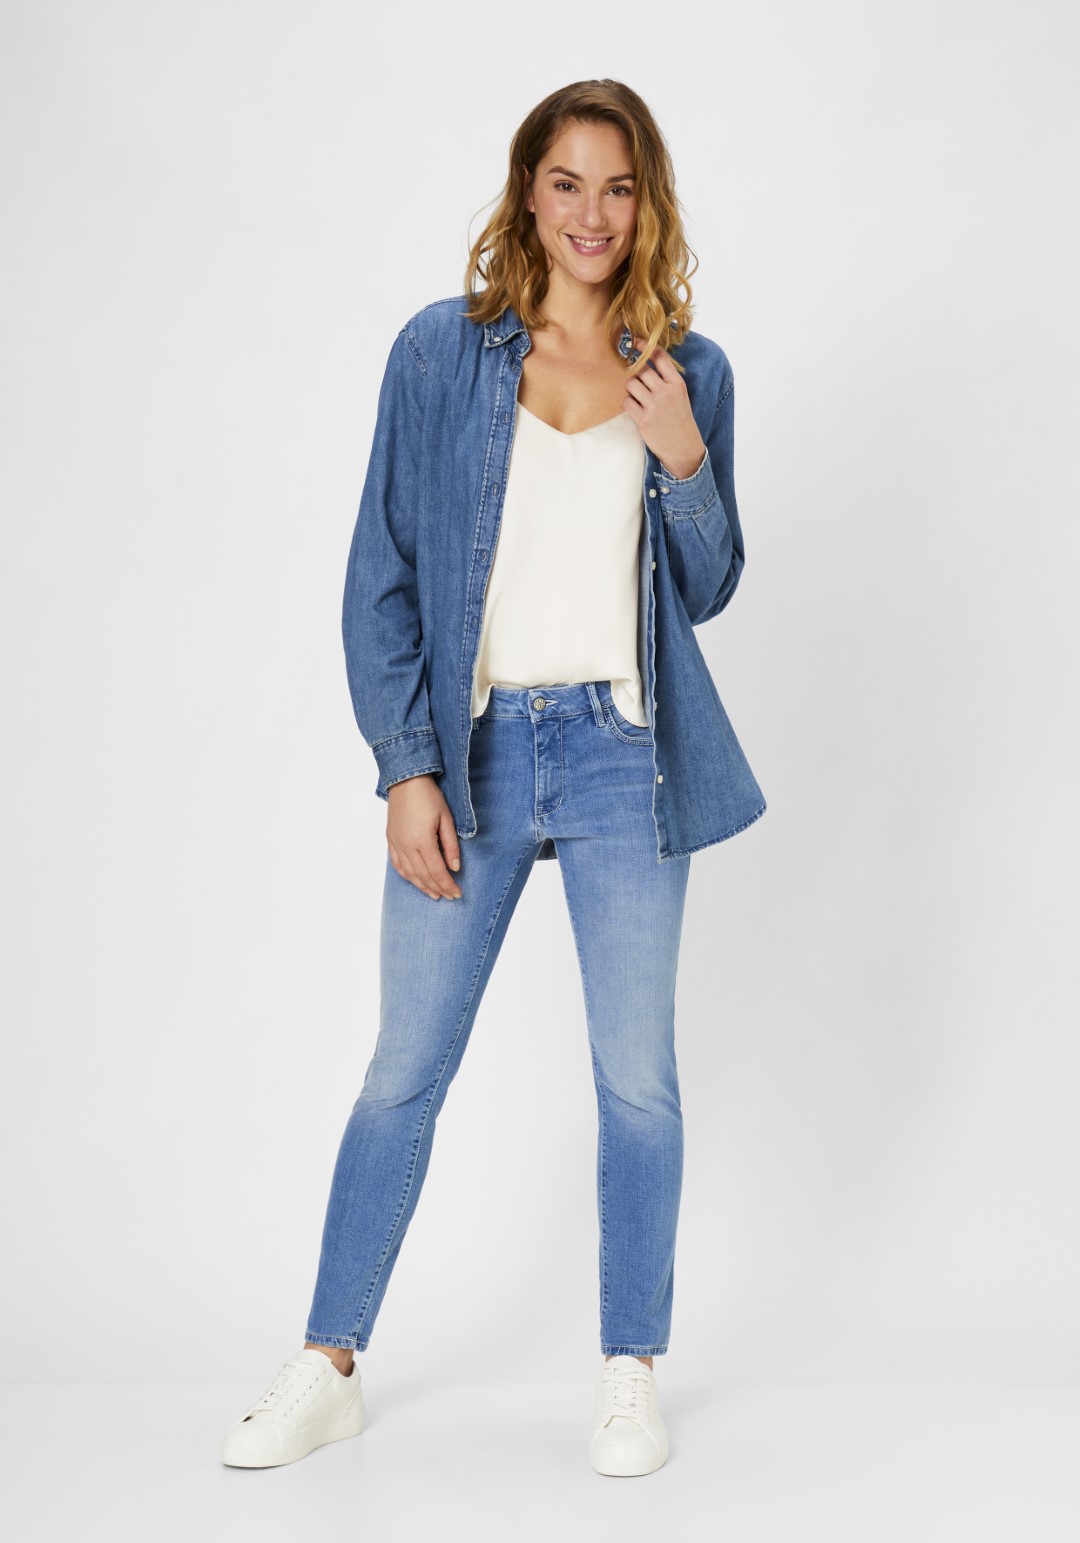 direkt Damen-Jeans Shop Online kaufen vom Hersteller PADDOCK\'S |